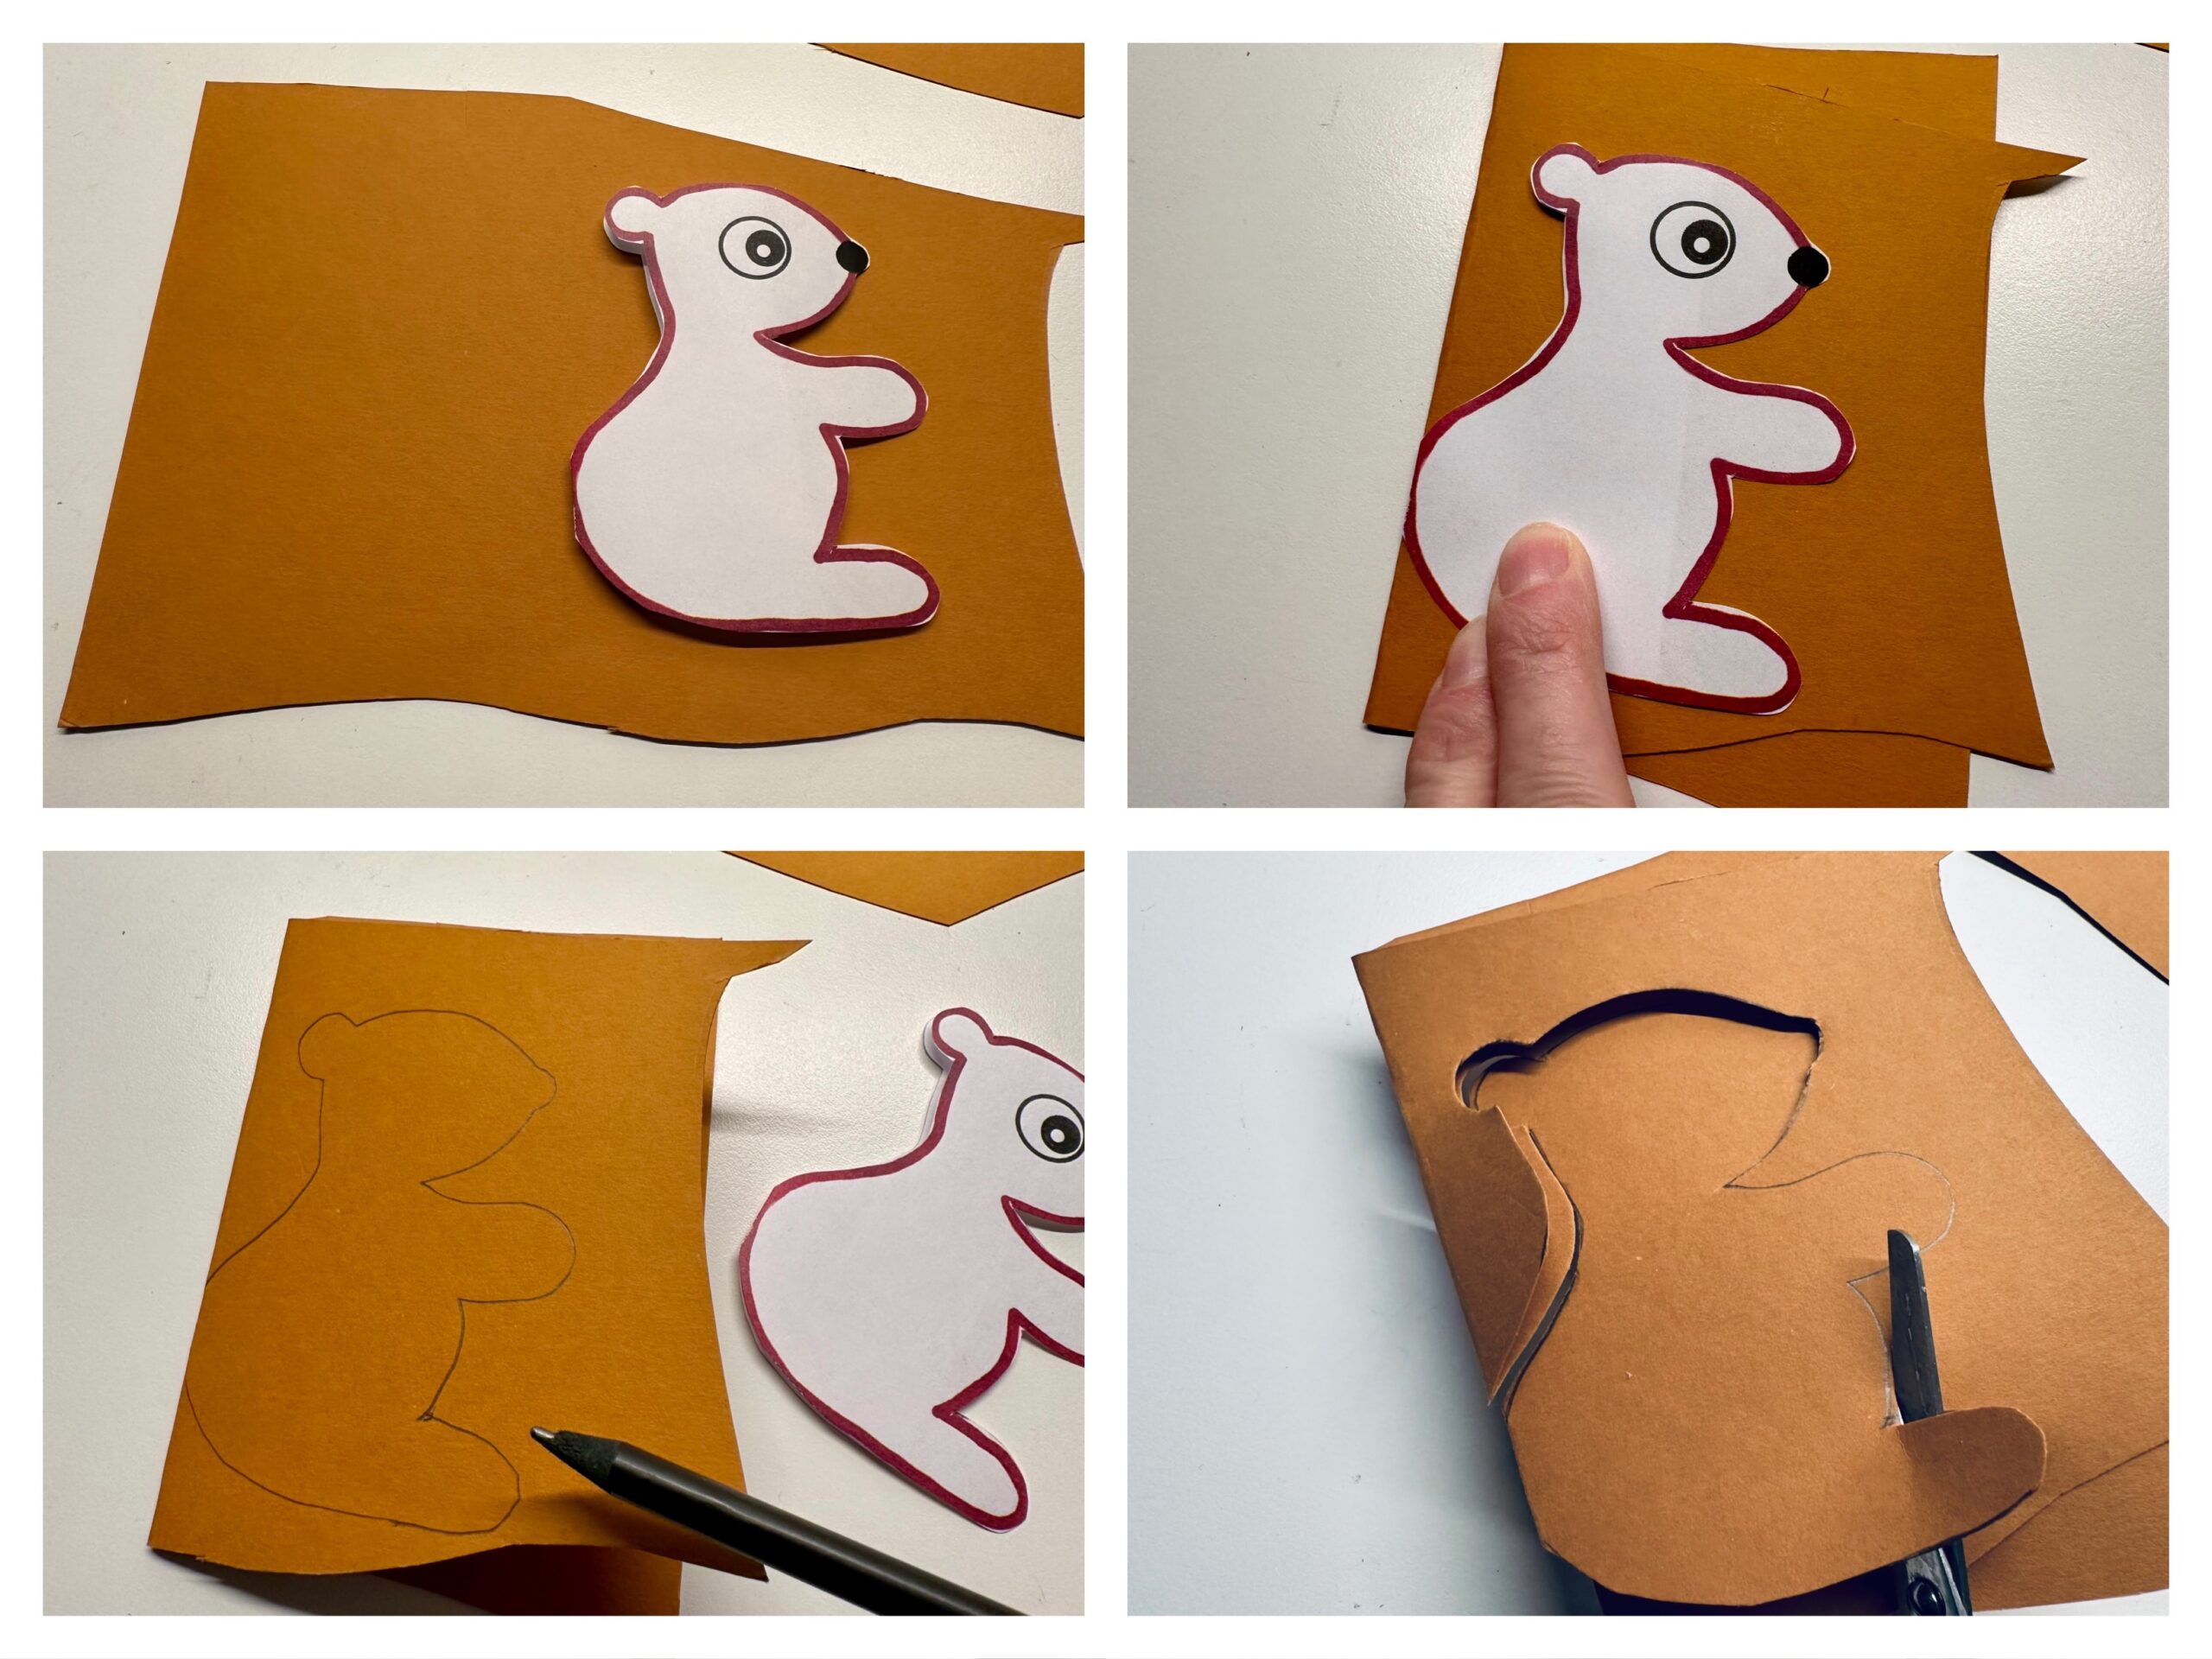 Bild zum Schritt 5 für das Bastel- und DIY-Abenteuer für Kinder: 'Faltet das Papier doppelt und übertragt die Schablone auf das...'